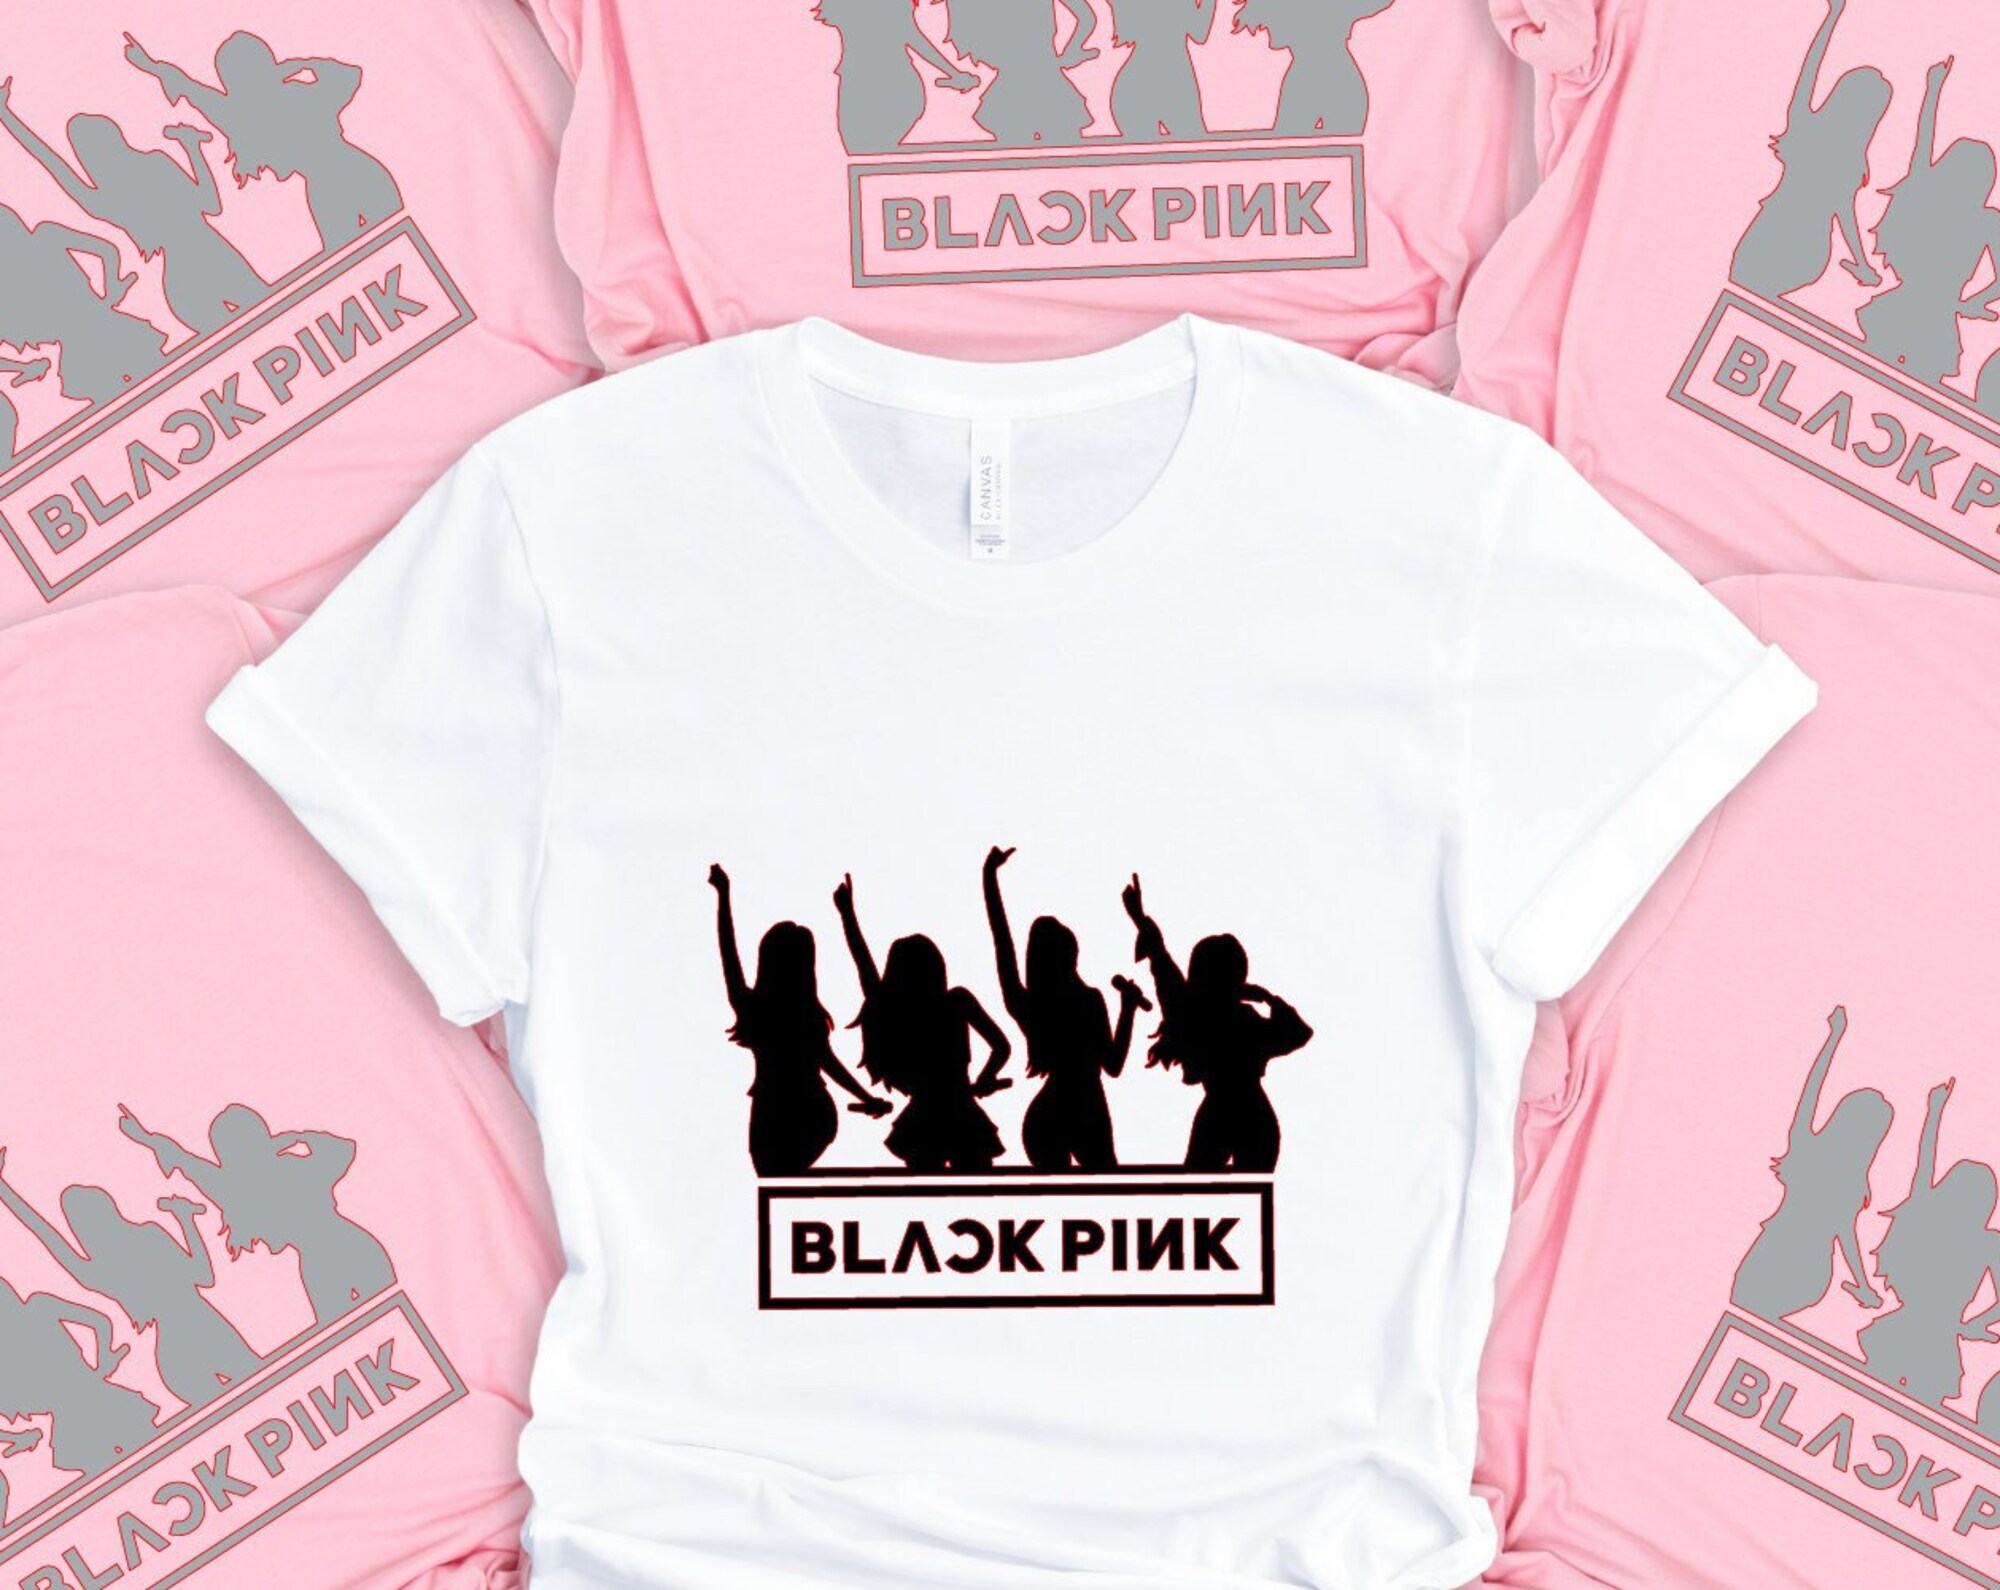 Discover Maglietta T-Shirt Blackpink Per Uomo Donna Bambini - Membri Del Gruppo Kpop Jennie Lisa Rose Jisoo